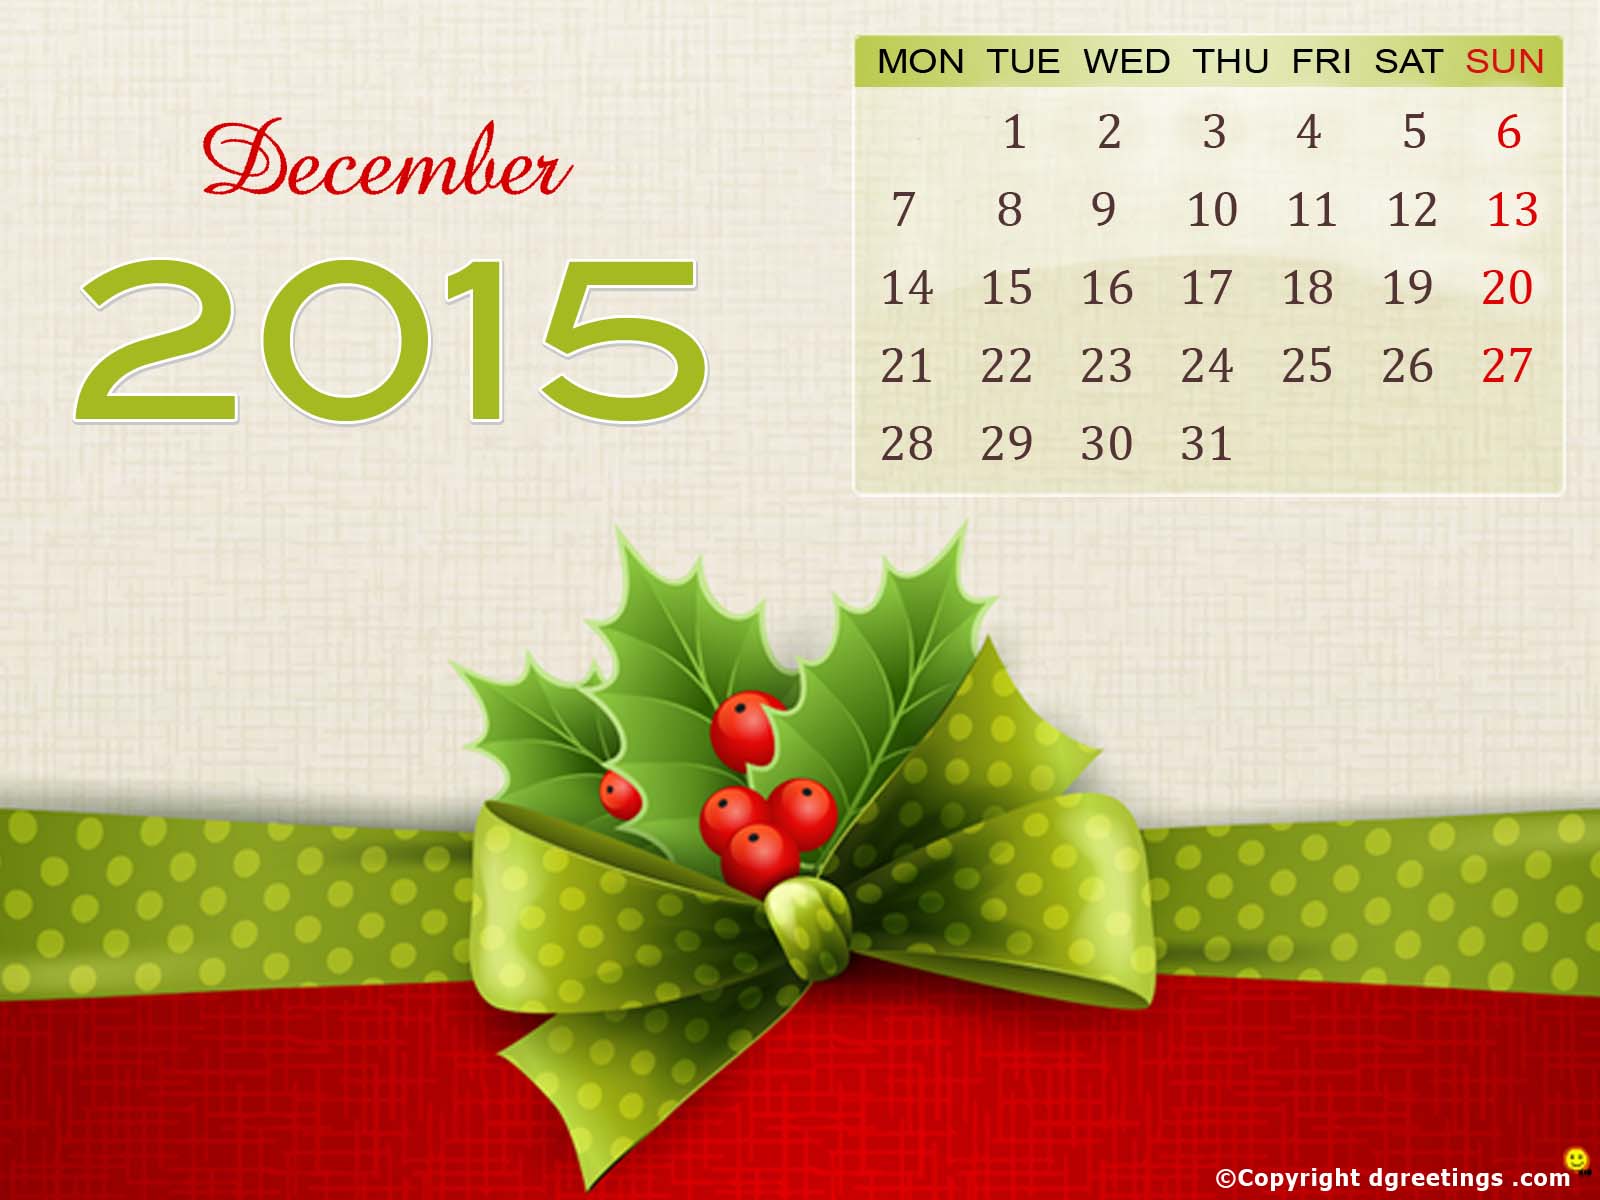 December 2015 Calendar Wallpaper - HD Wallpaper 